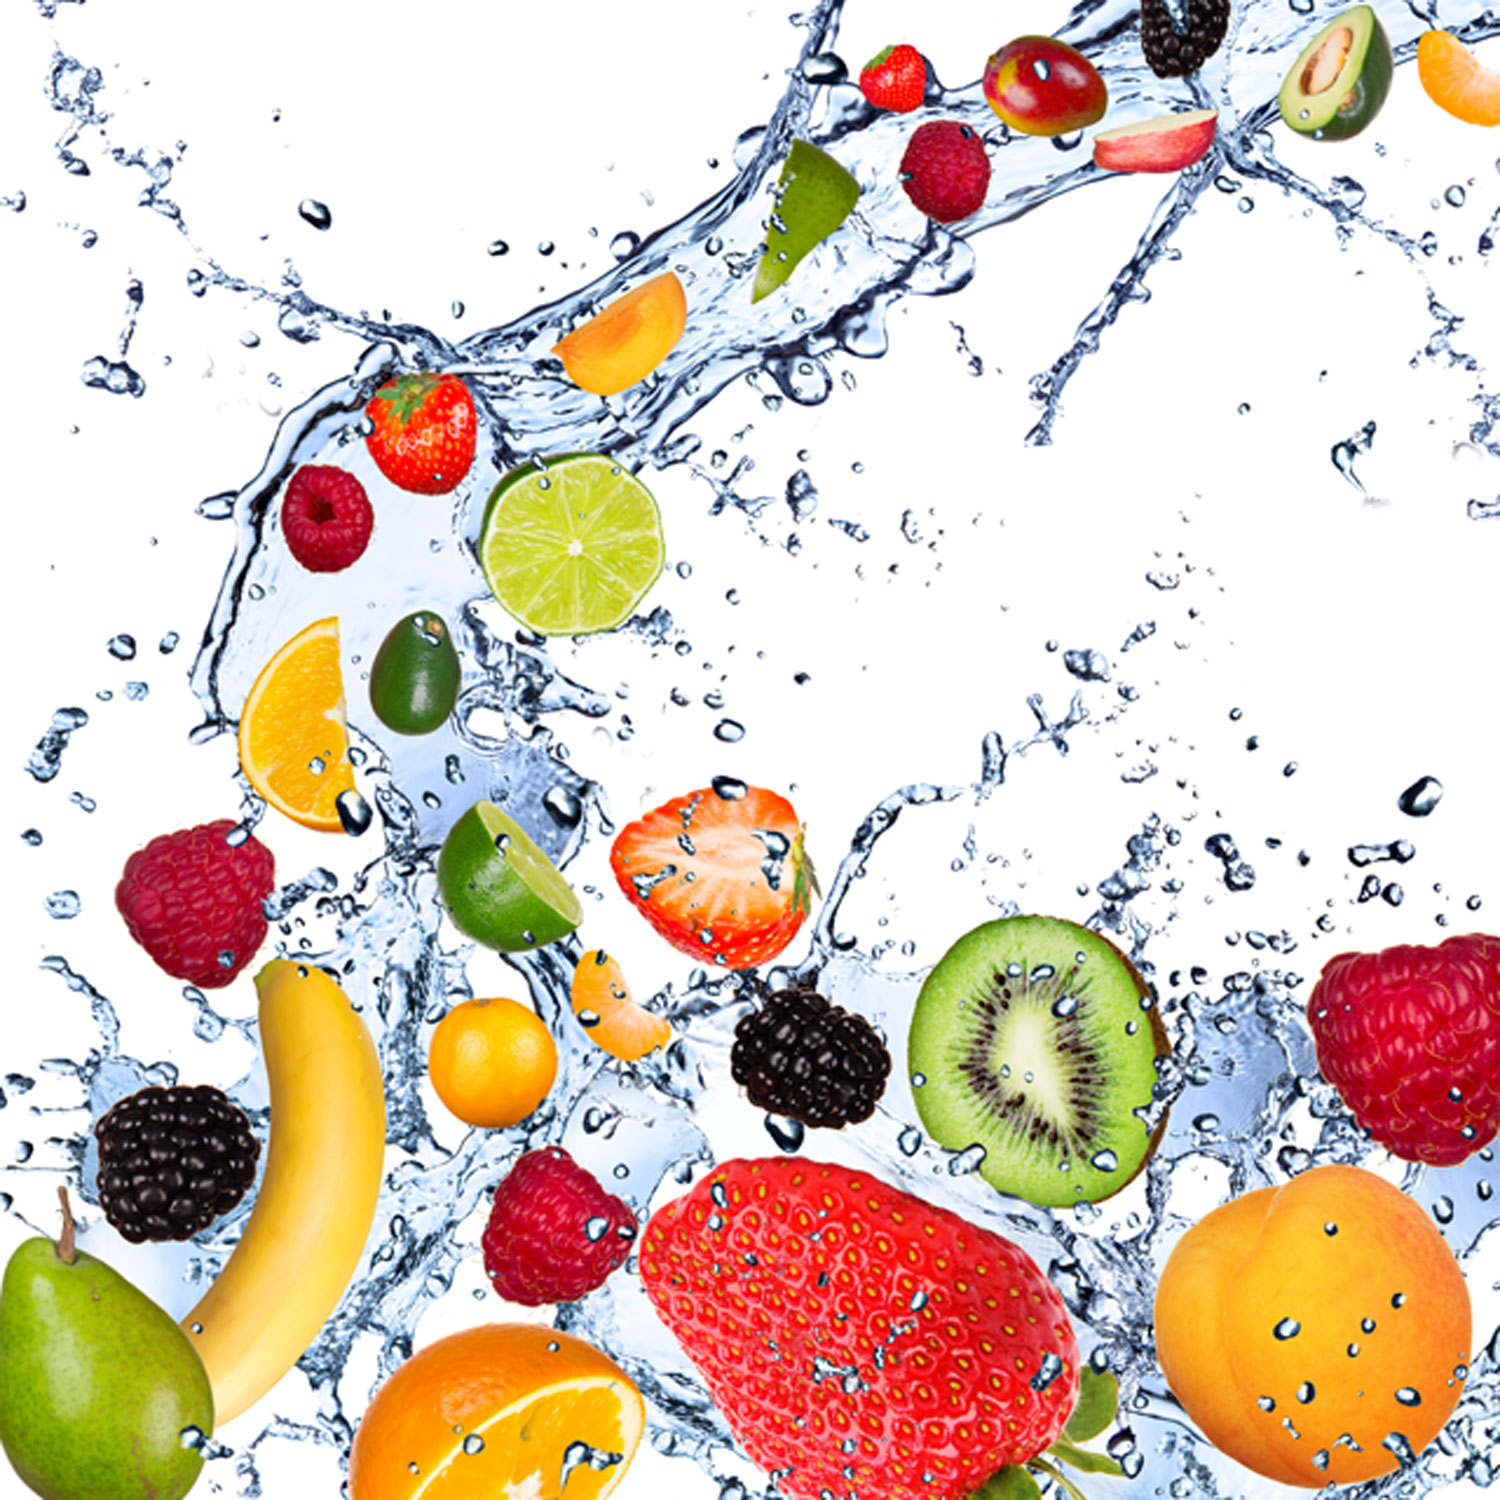 La importancia y los beneficios que tiene para la salud el consumo de frutas y vegetales